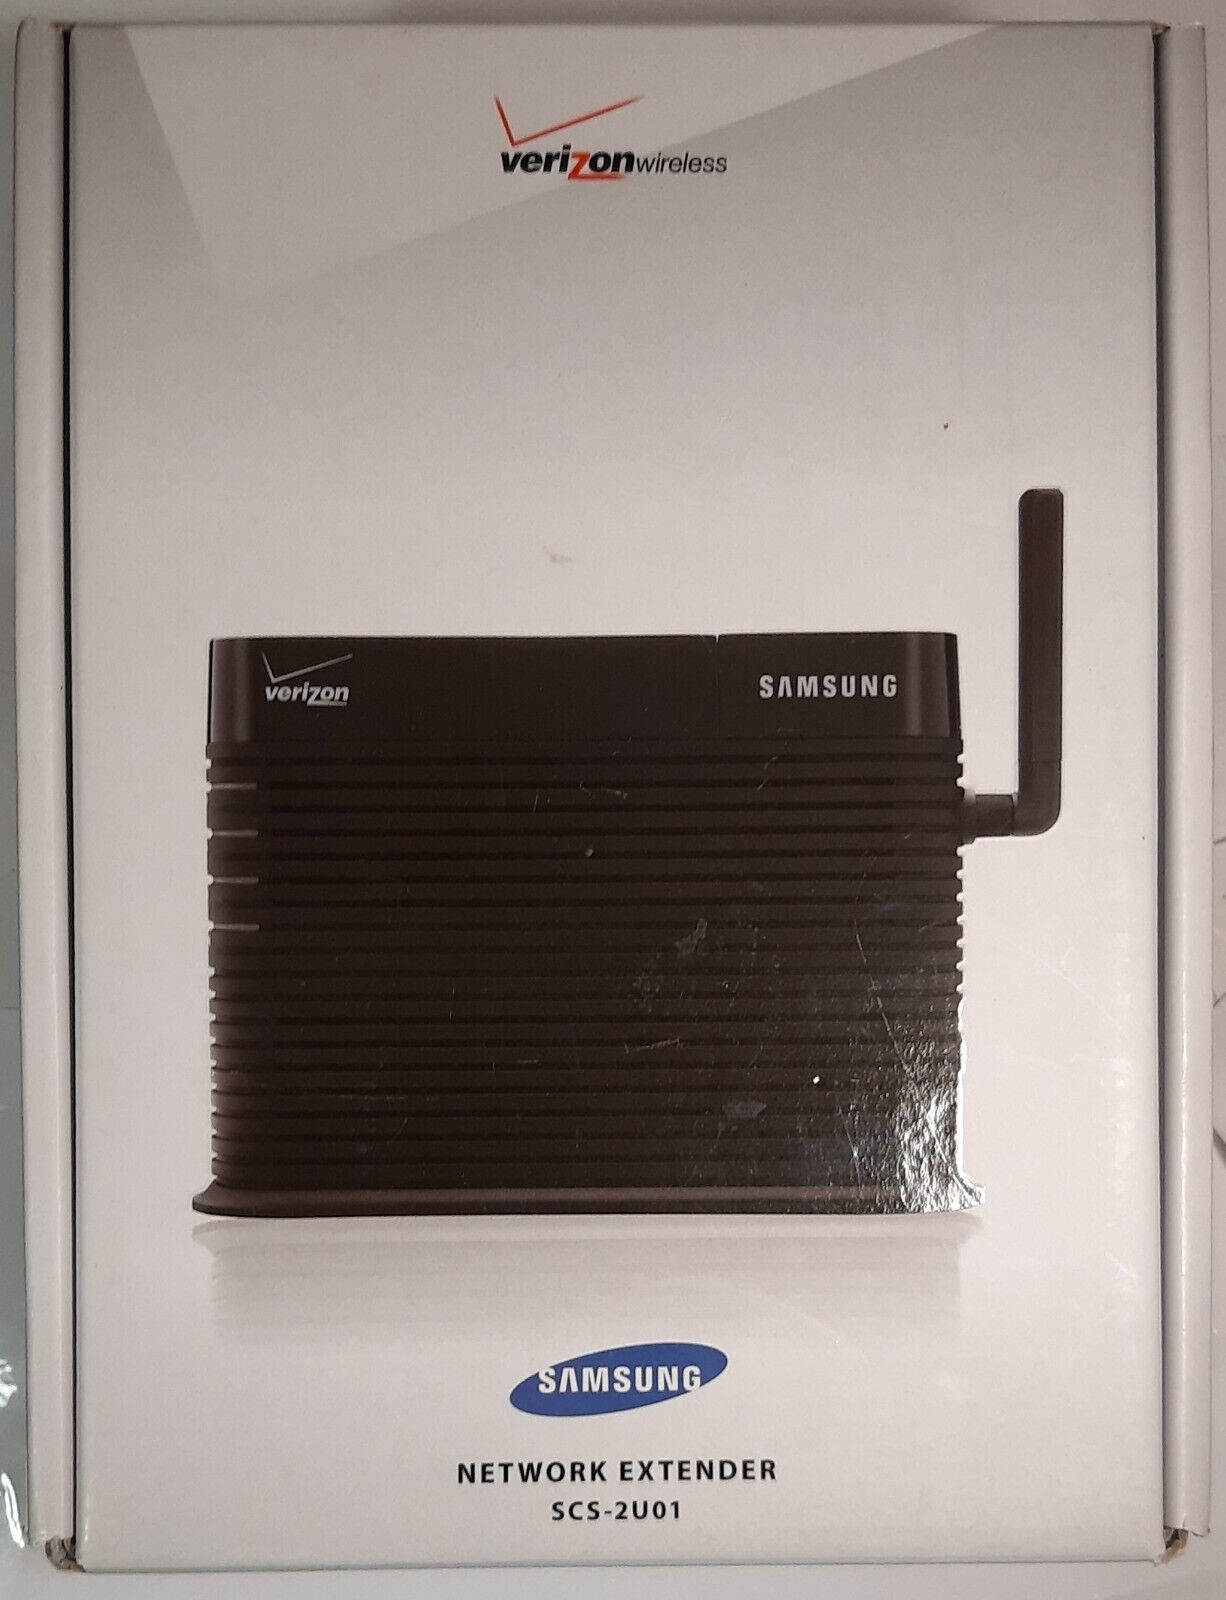 Samsung SCS2U01 Network Extender for Verizon Wireless - Black - $35.00